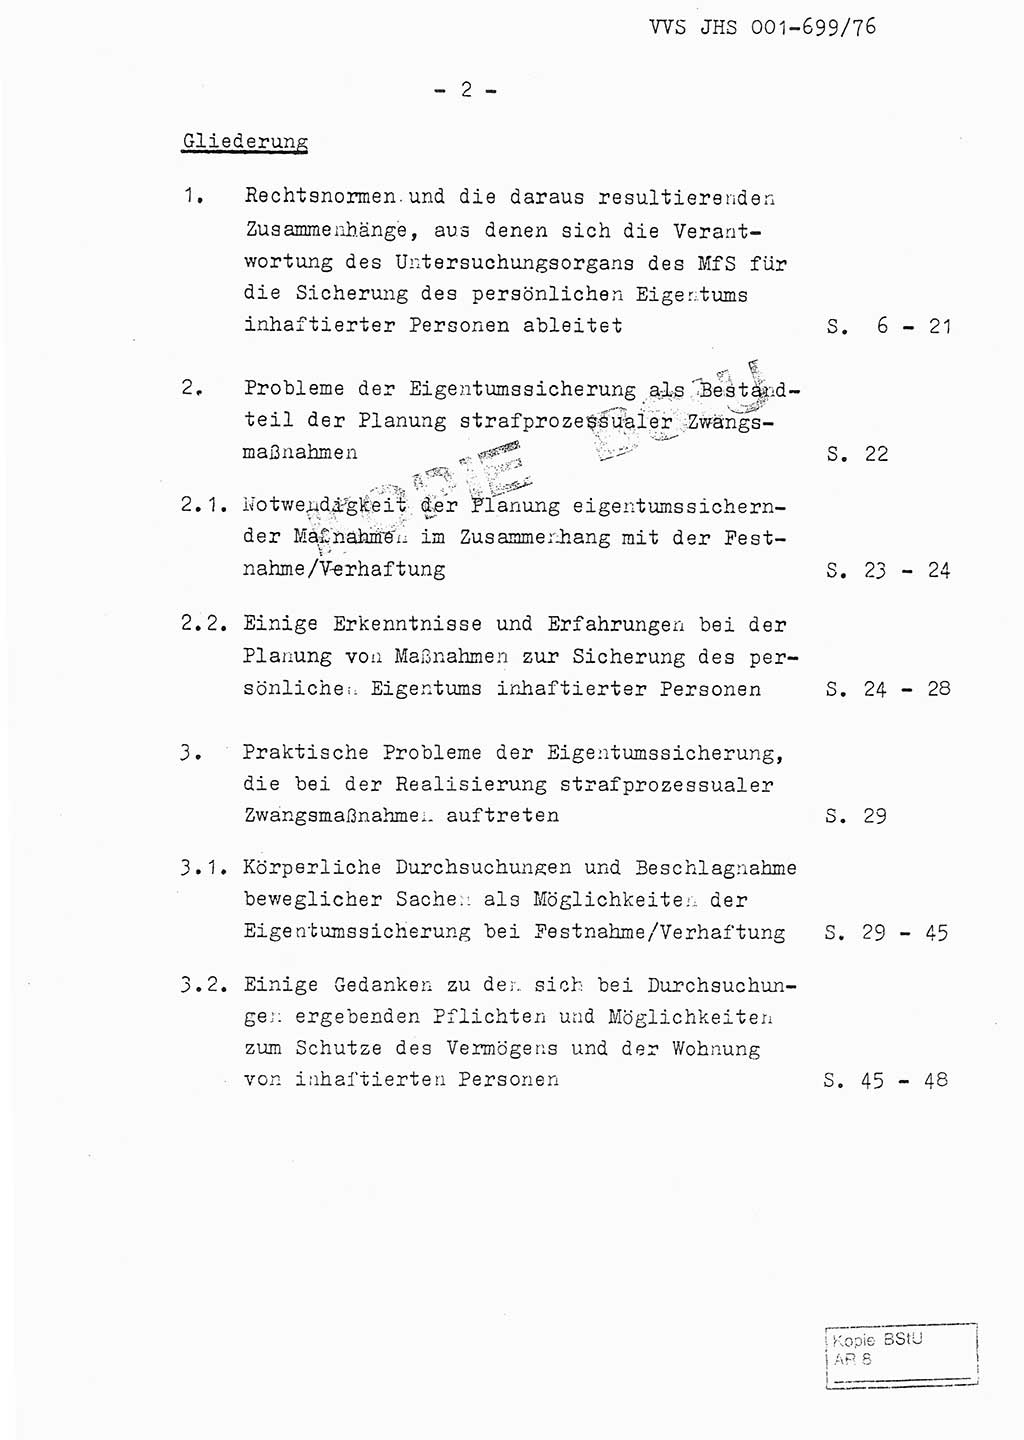 Fachschulabschlußarbeit Leutnant Volkmar Taubert (HA Ⅸ/9), Leutnant Axel Naumann (HA Ⅸ/9), Unterleutnat Detlef Debski (HA Ⅸ/9), Ministerium für Staatssicherheit (MfS) [Deutsche Demokratische Republik (DDR)], Juristische Hochschule (JHS), Vertrauliche Verschlußsache (VVS) 001-699/76, Potsdam 1976, Seite 2 (FS-Abschl.-Arb. MfS DDR JHS VVS 001-699/76 1976, S. 2)